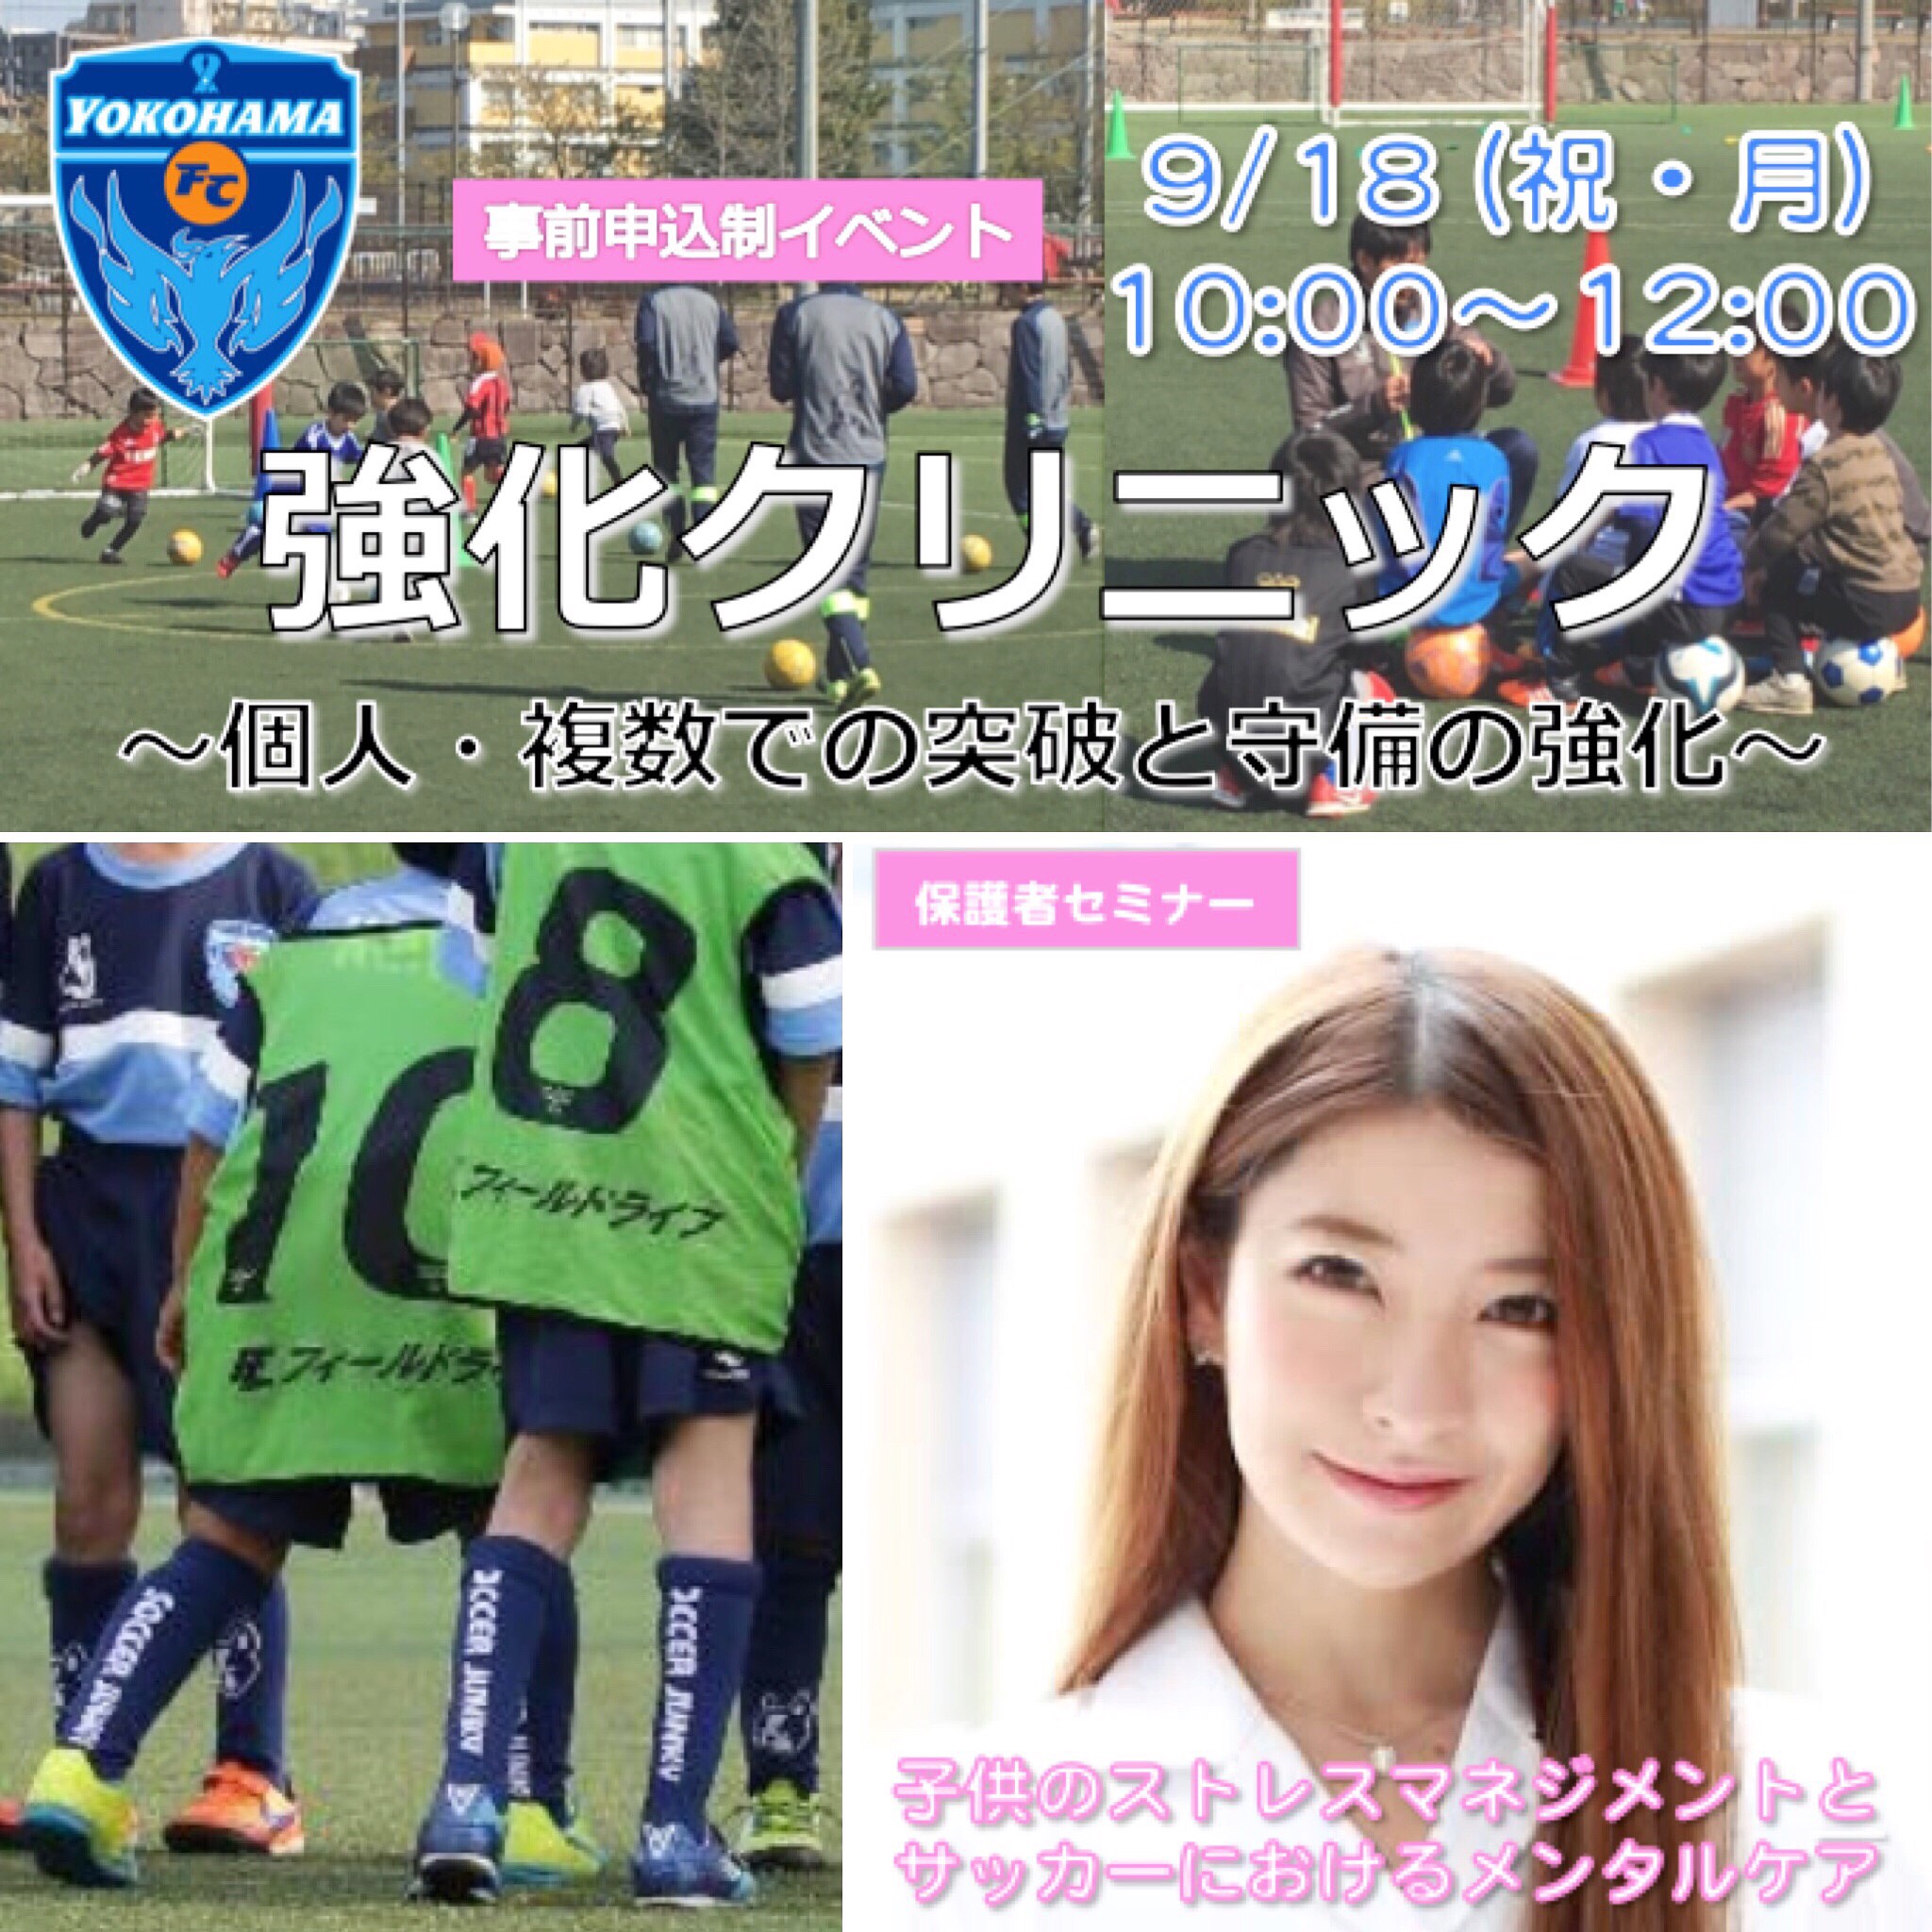 9 18 月 強化クリニック 参加者募集のお知らせ 横浜fcサッカースクール